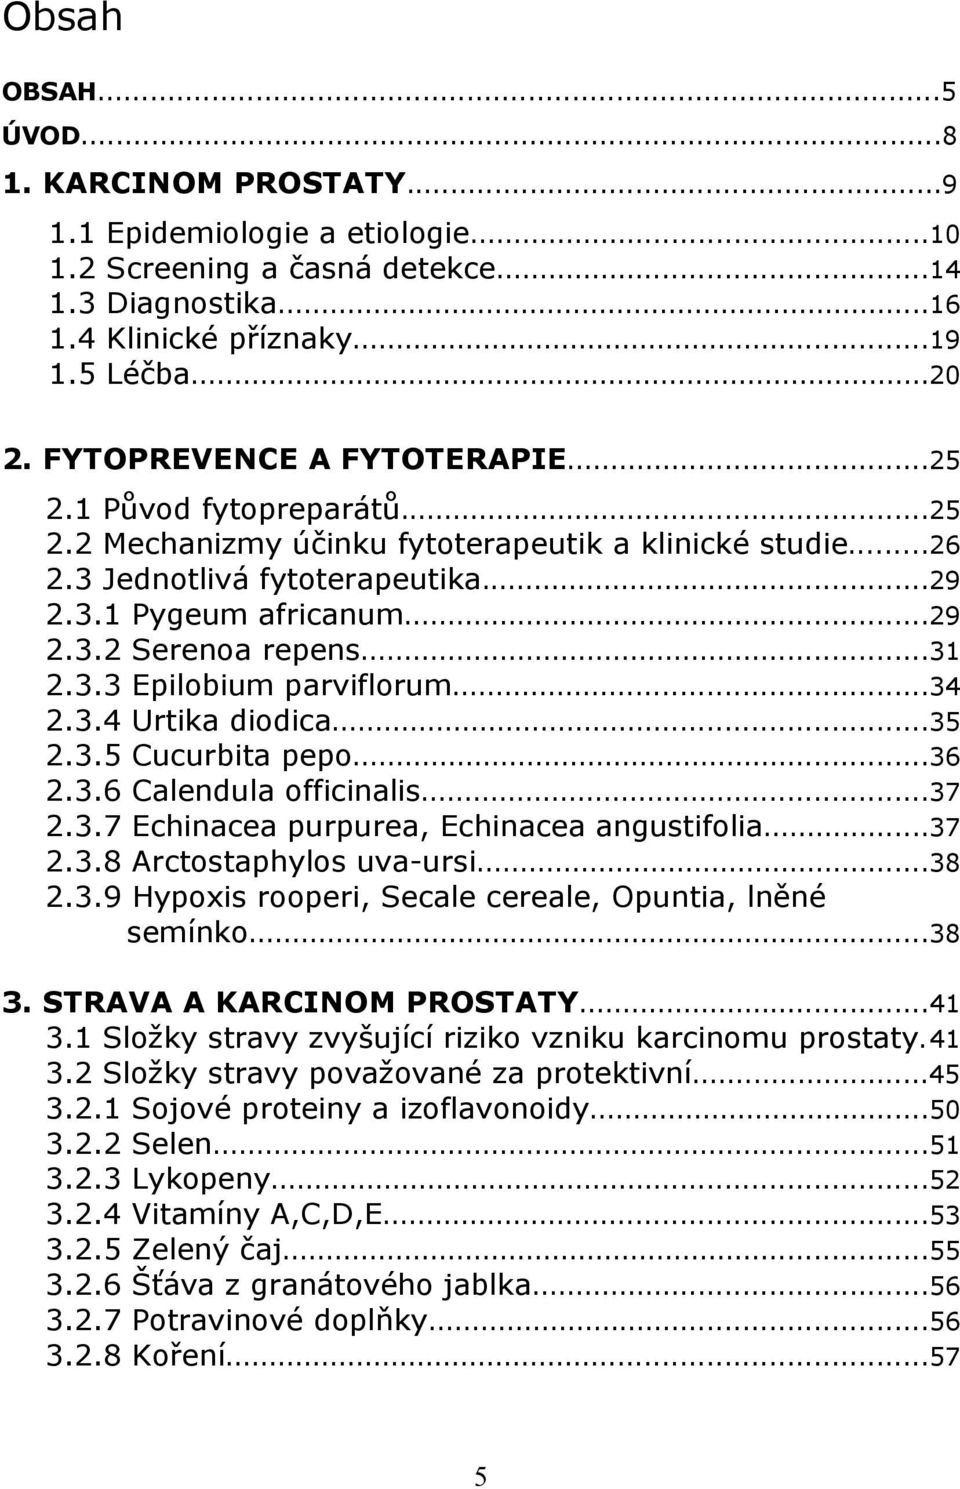 ..31 2.3.3 Epilobium parviflorum...34 2.3.4 Urtika diodica...35 2.3.5 Cucurbita pepo...36 2.3.6 Calendula officinalis...37 2.3.7 Echinacea purpurea, Echinacea angustifolia...37 2.3.8 Arctostaphylos uva-ursi.